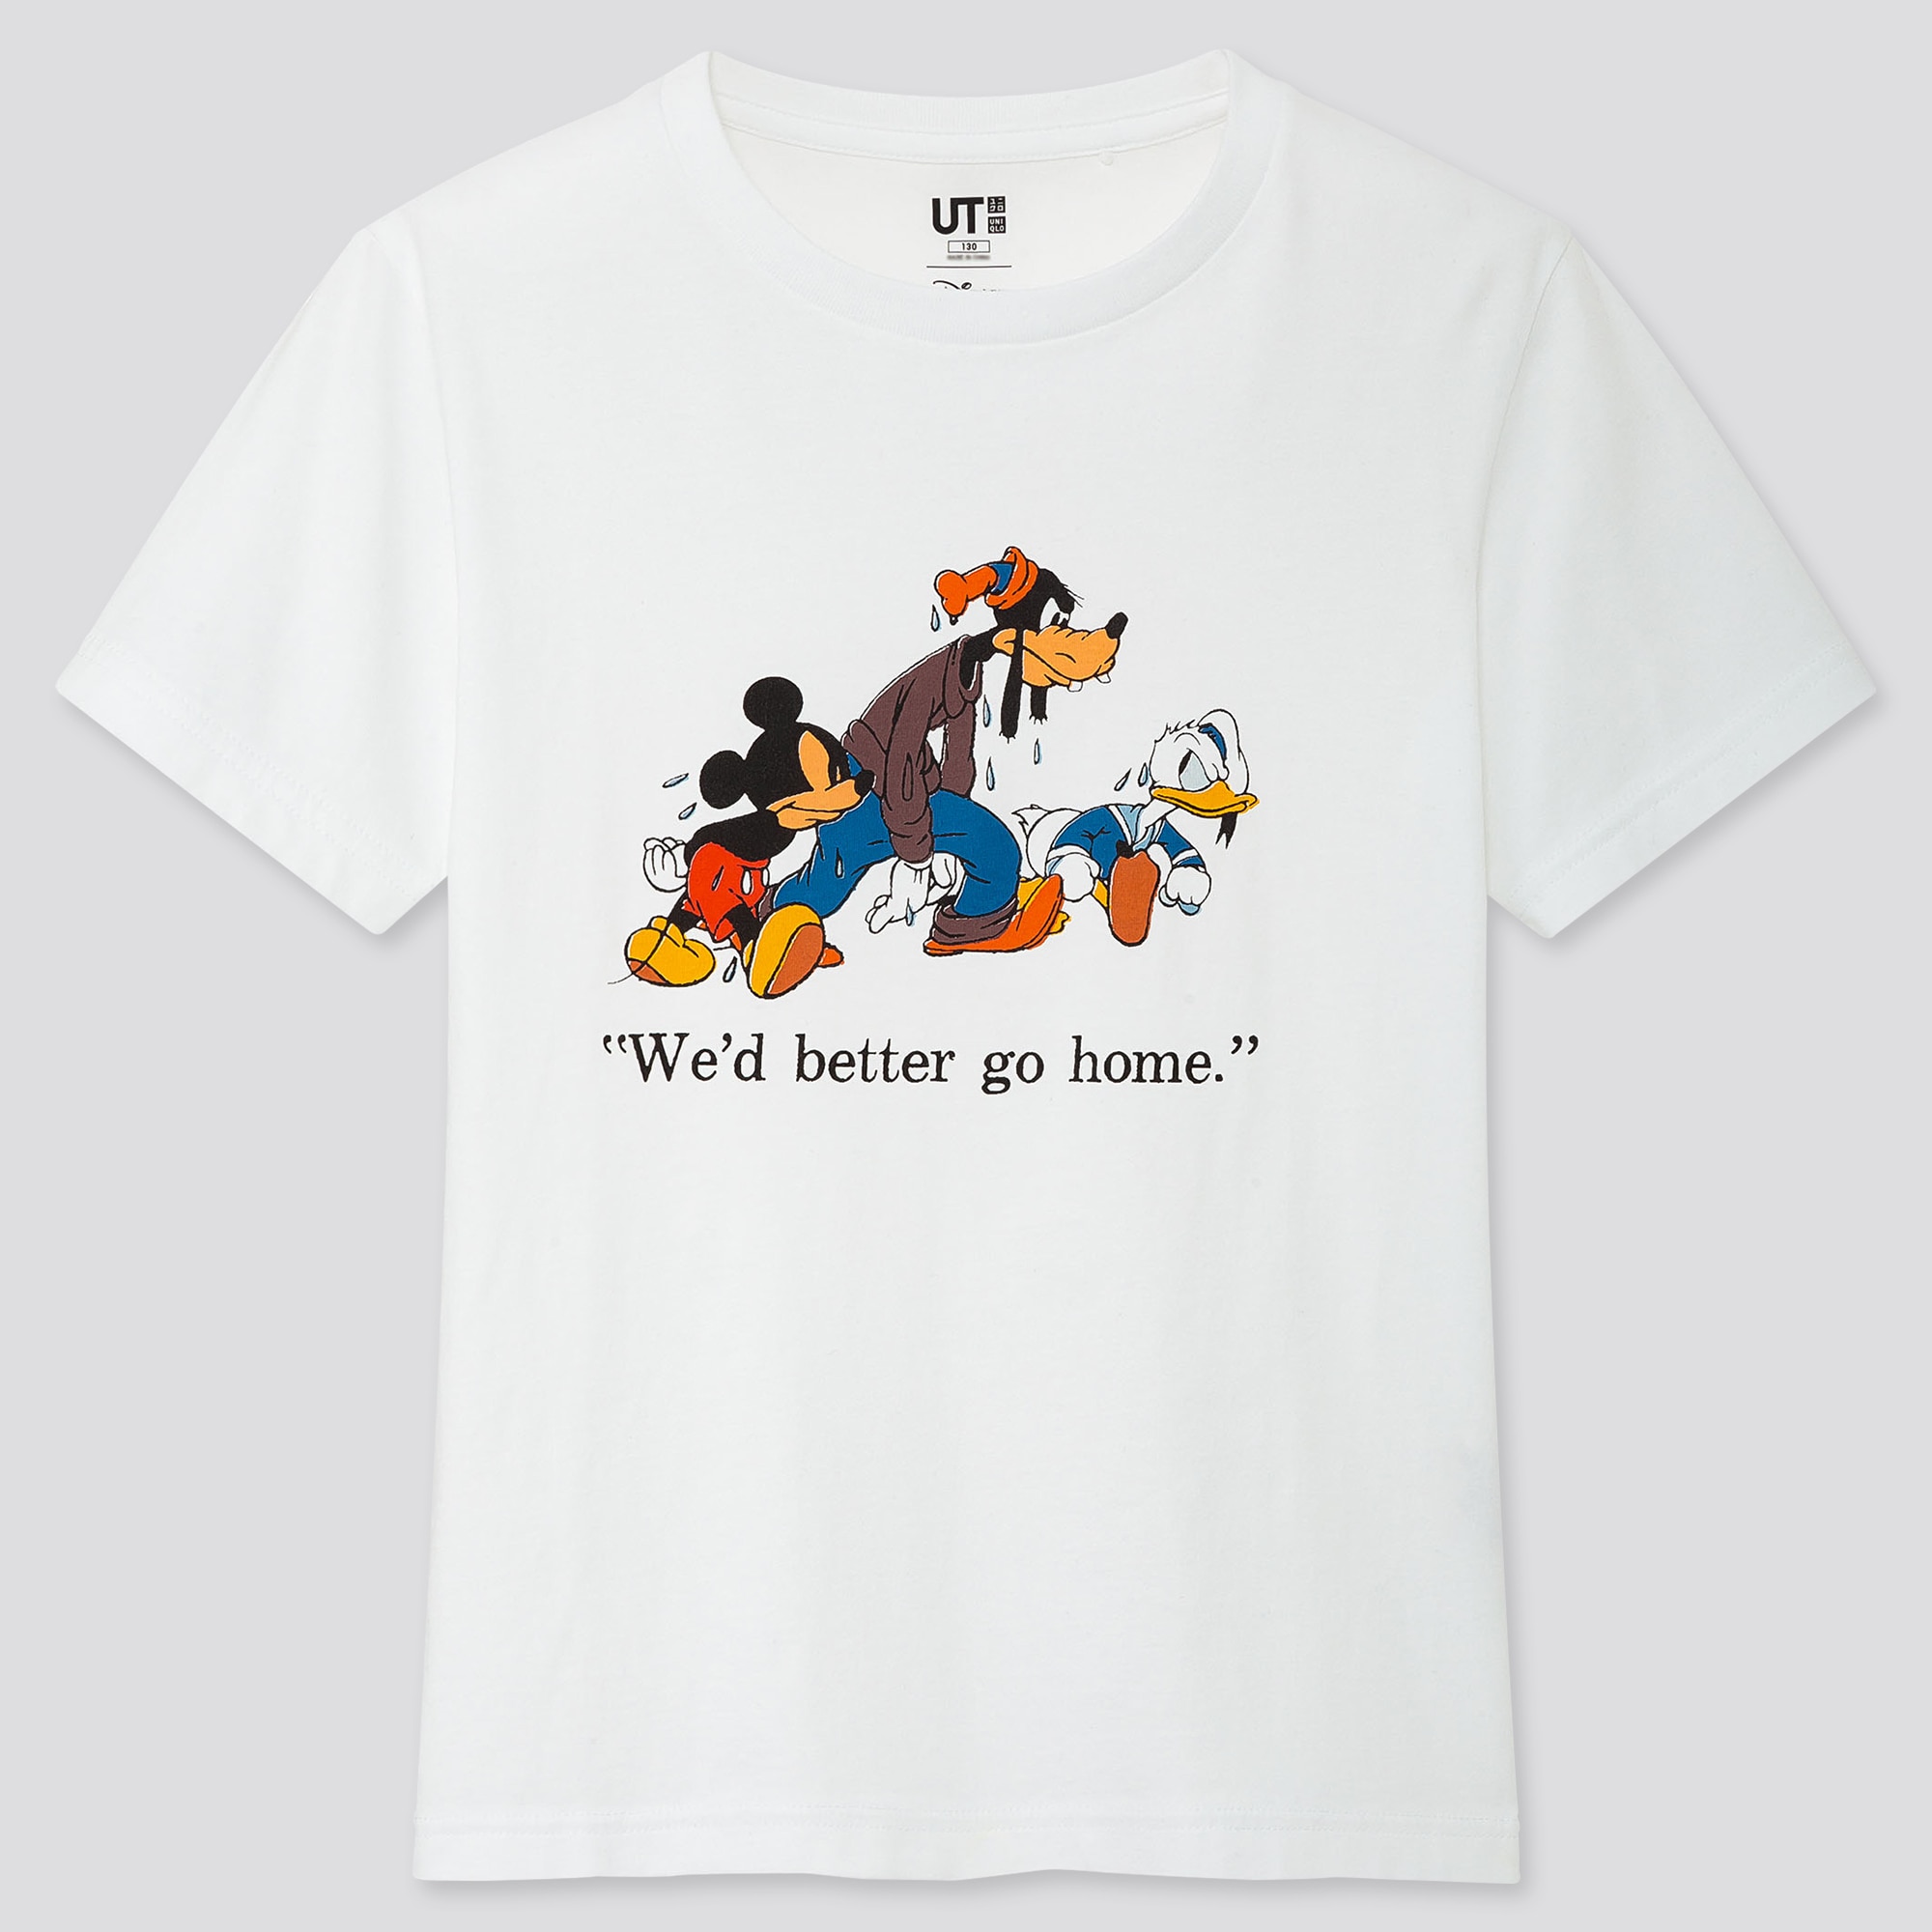 Uniqloのkids ディズニー ストーリーズ Ut グラフィックtシャツ 半袖 Stylehint